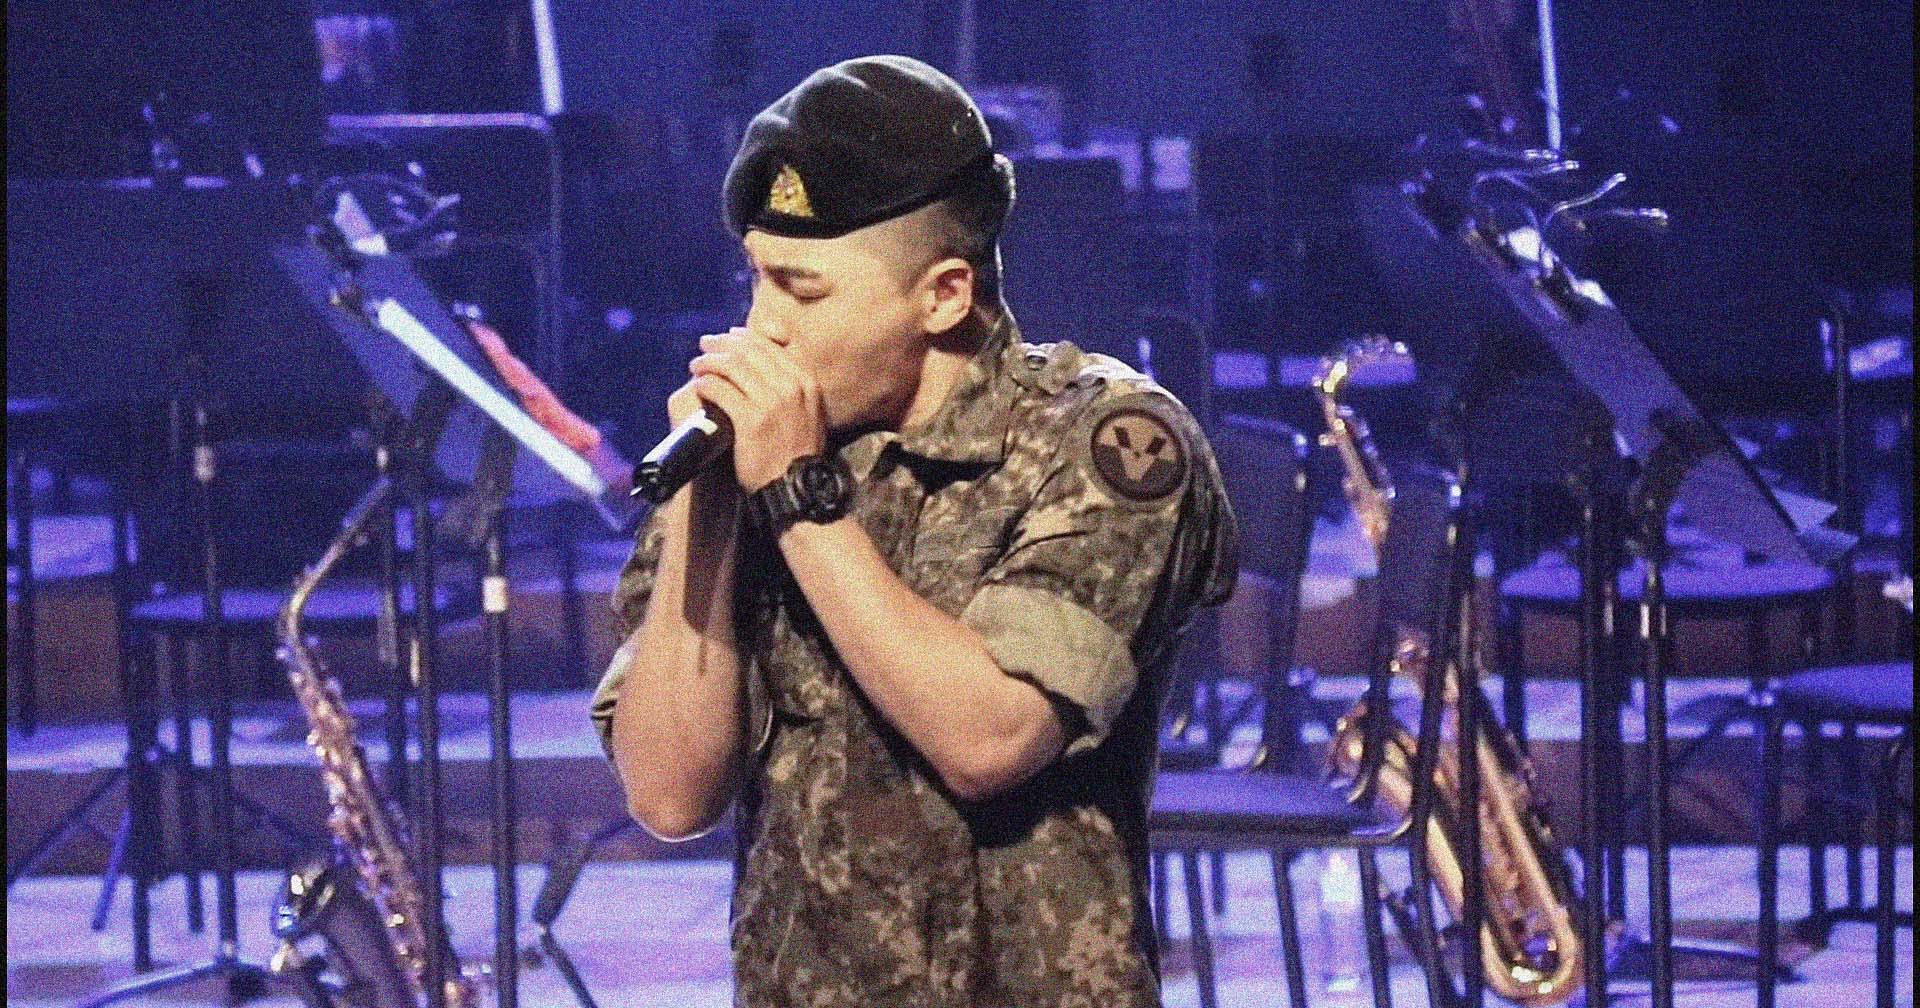 Big Bang's Taeyang has awesome performance at a military concert